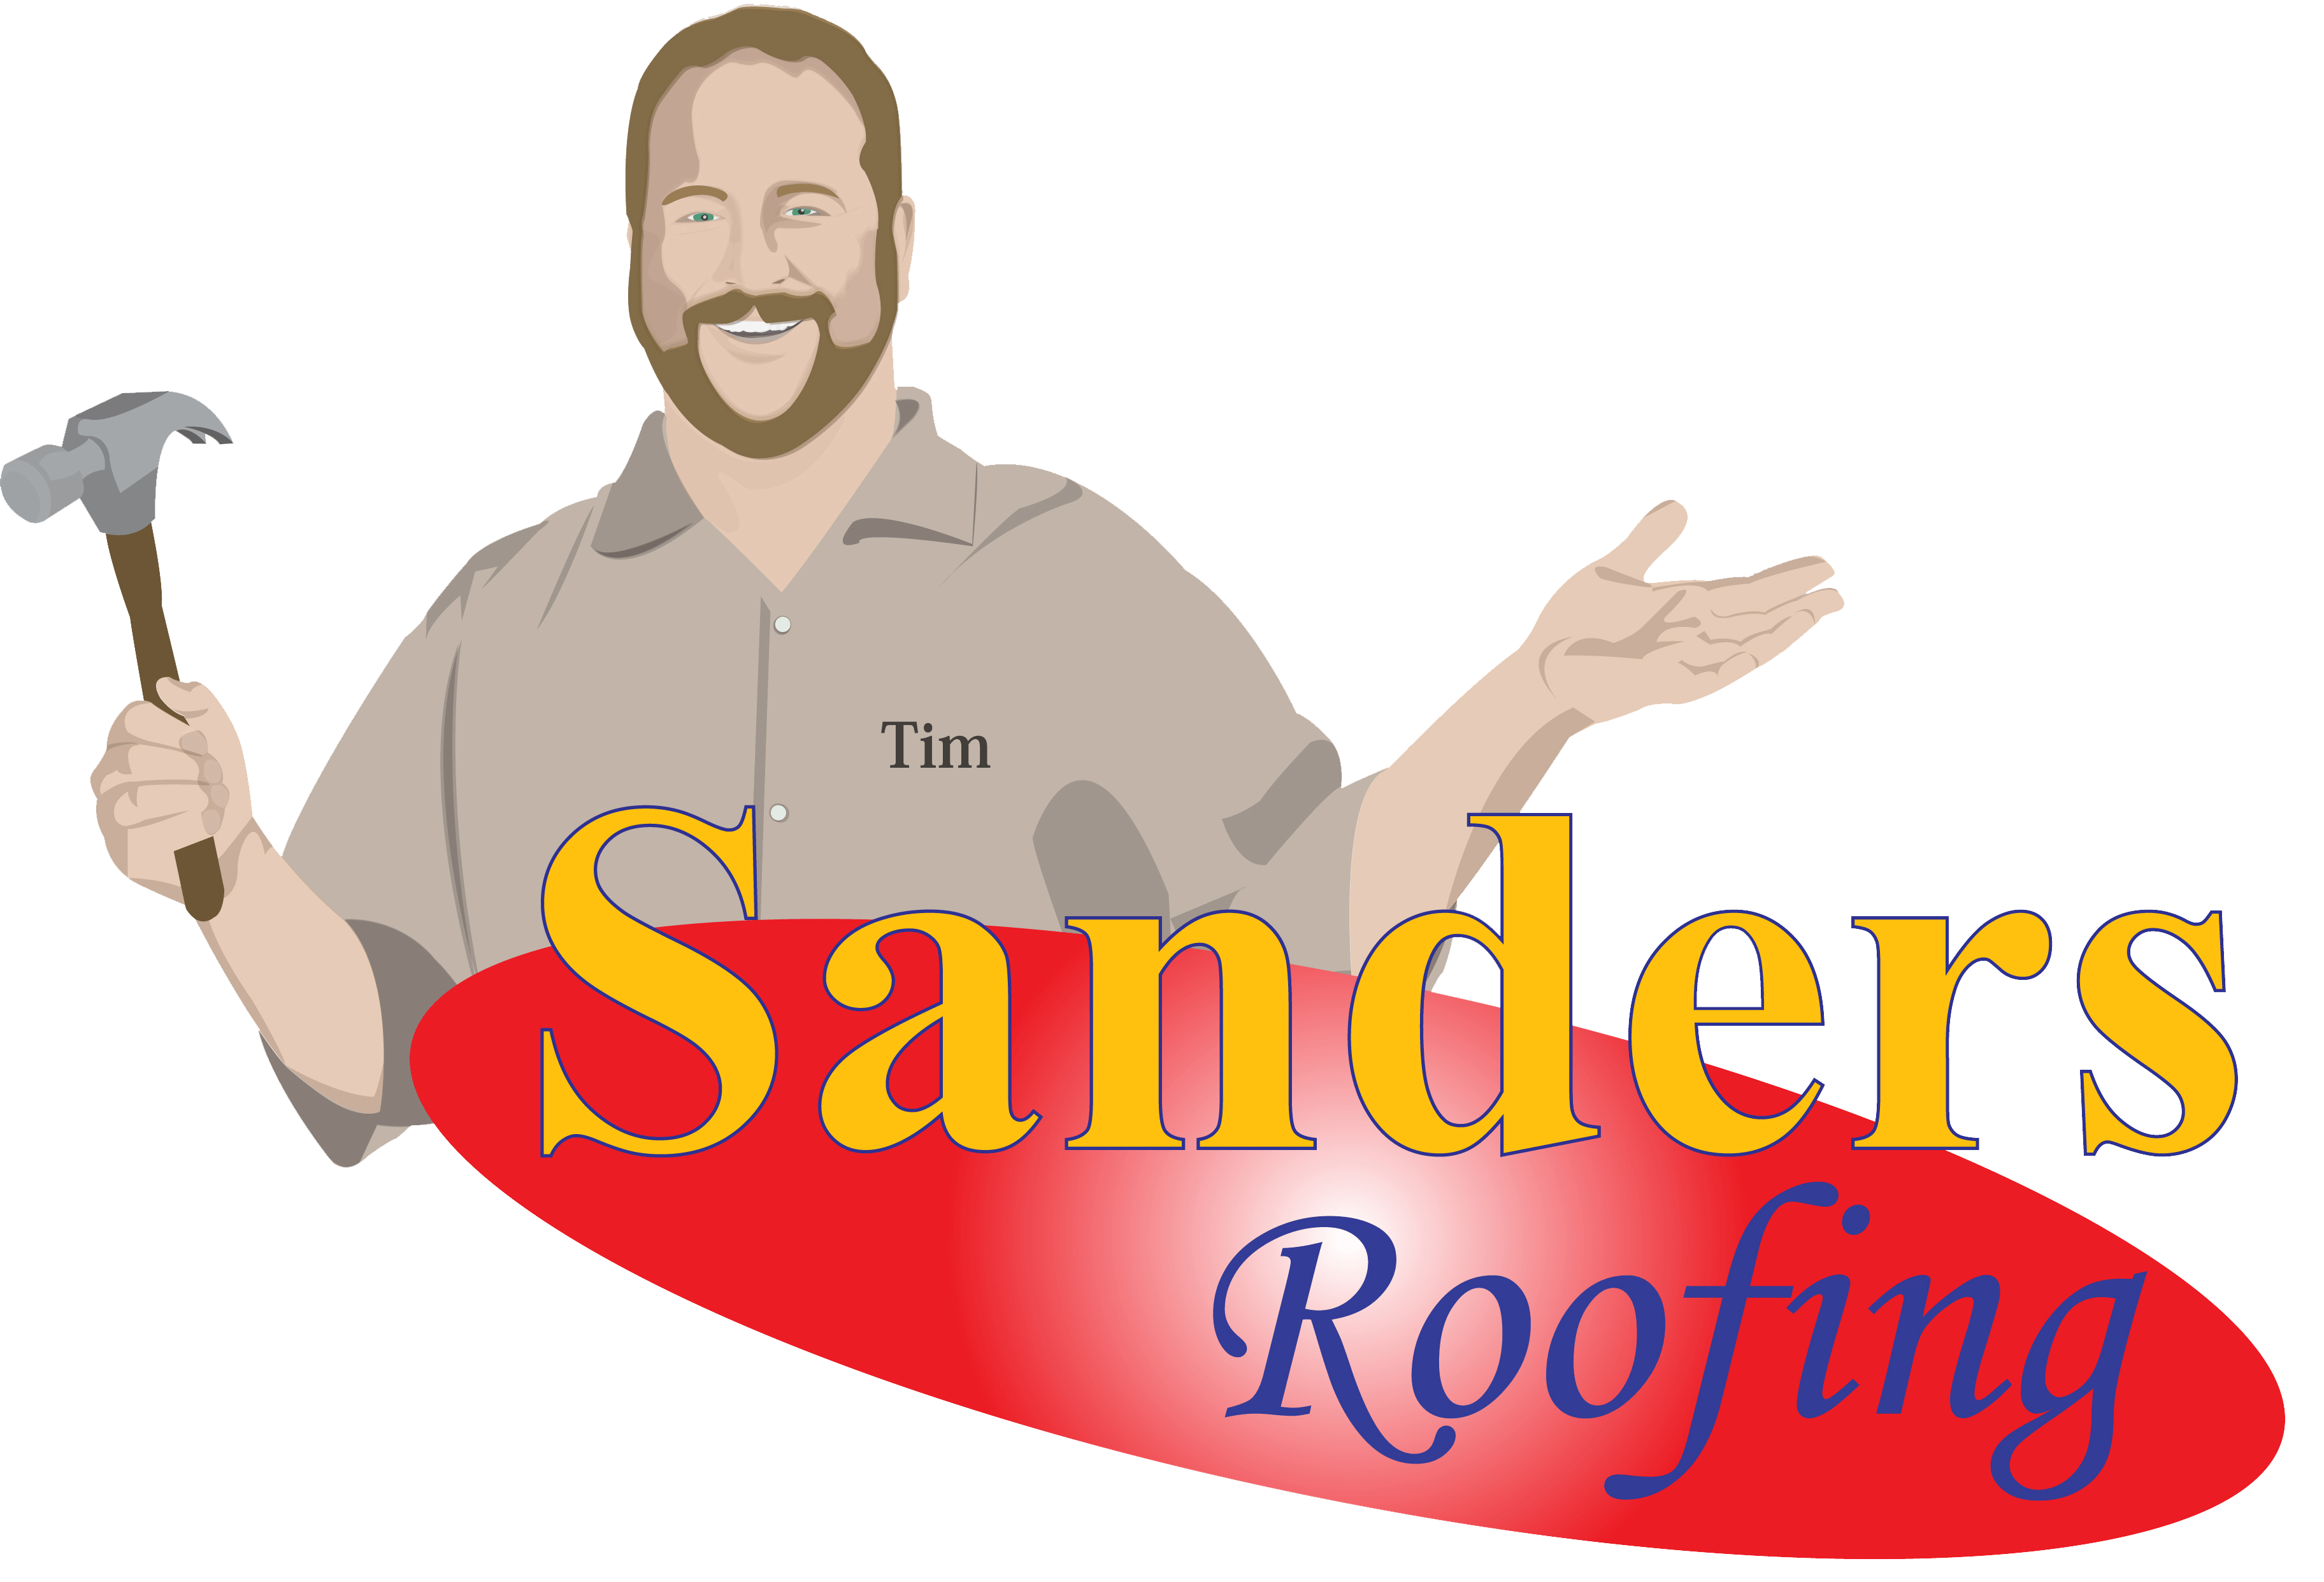 Tim Sanders Roofing